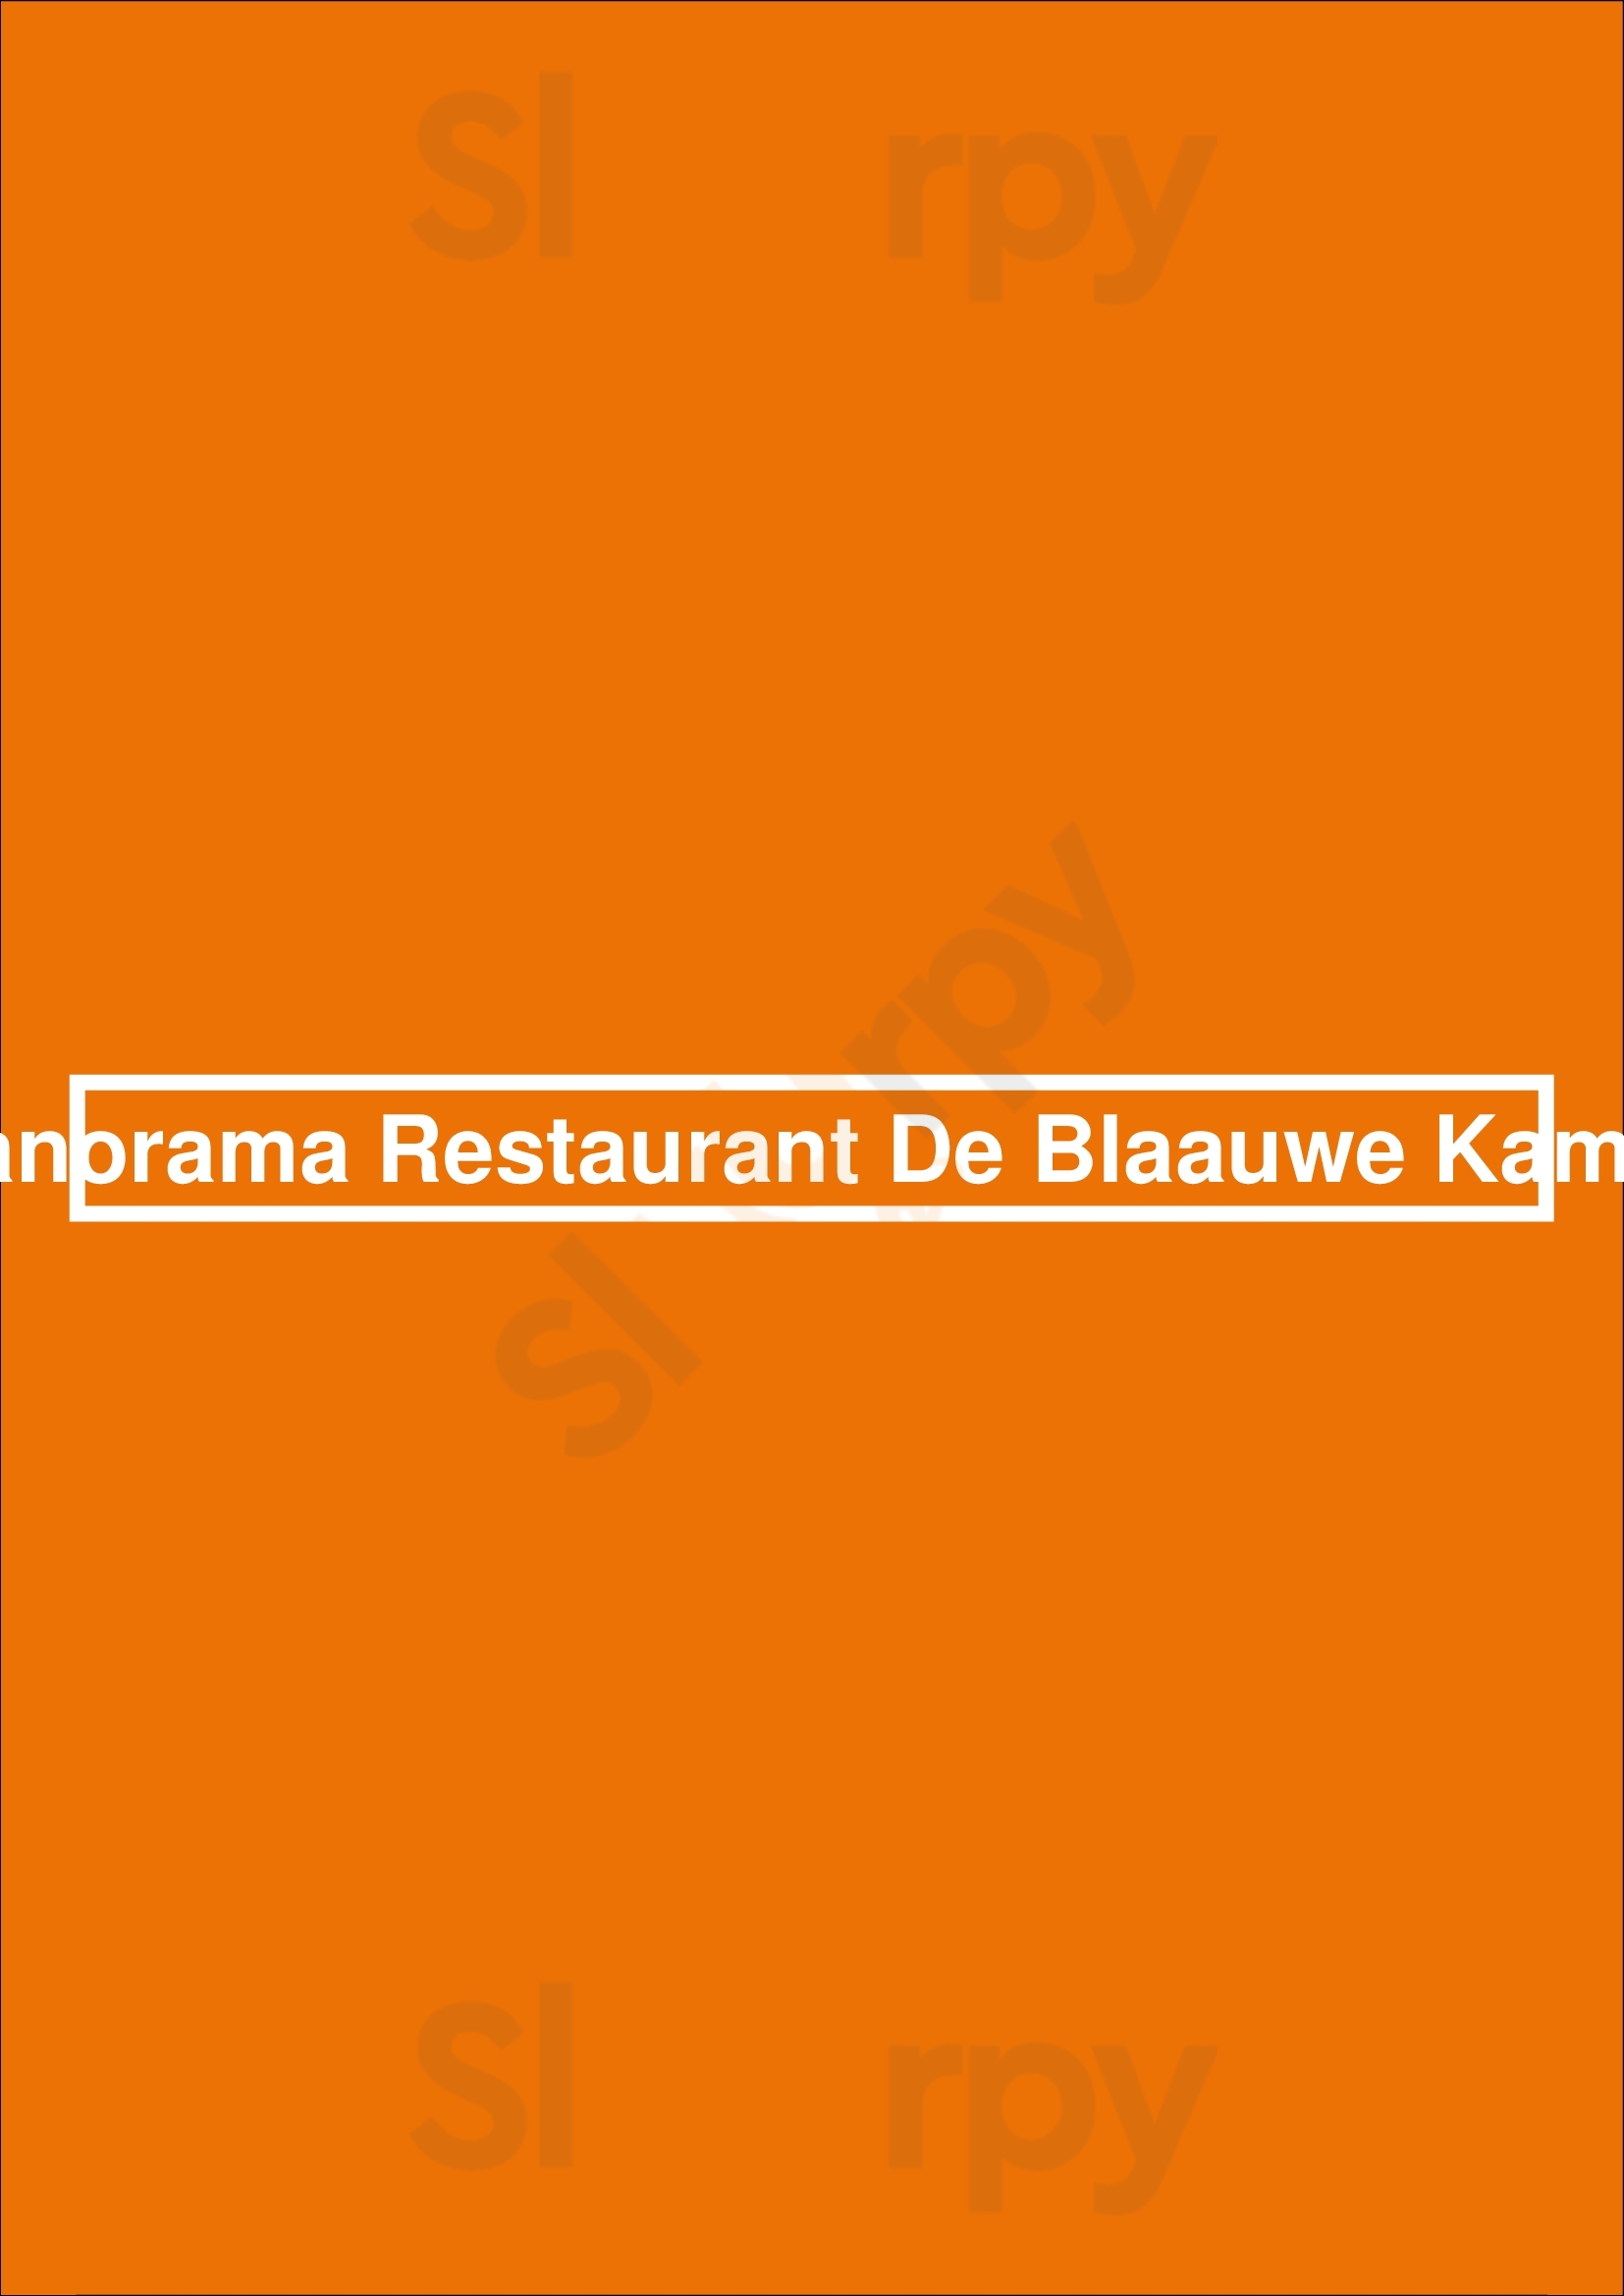 Panorama Restaurant De Blaauwe Kamer Wageningen Menu - 1